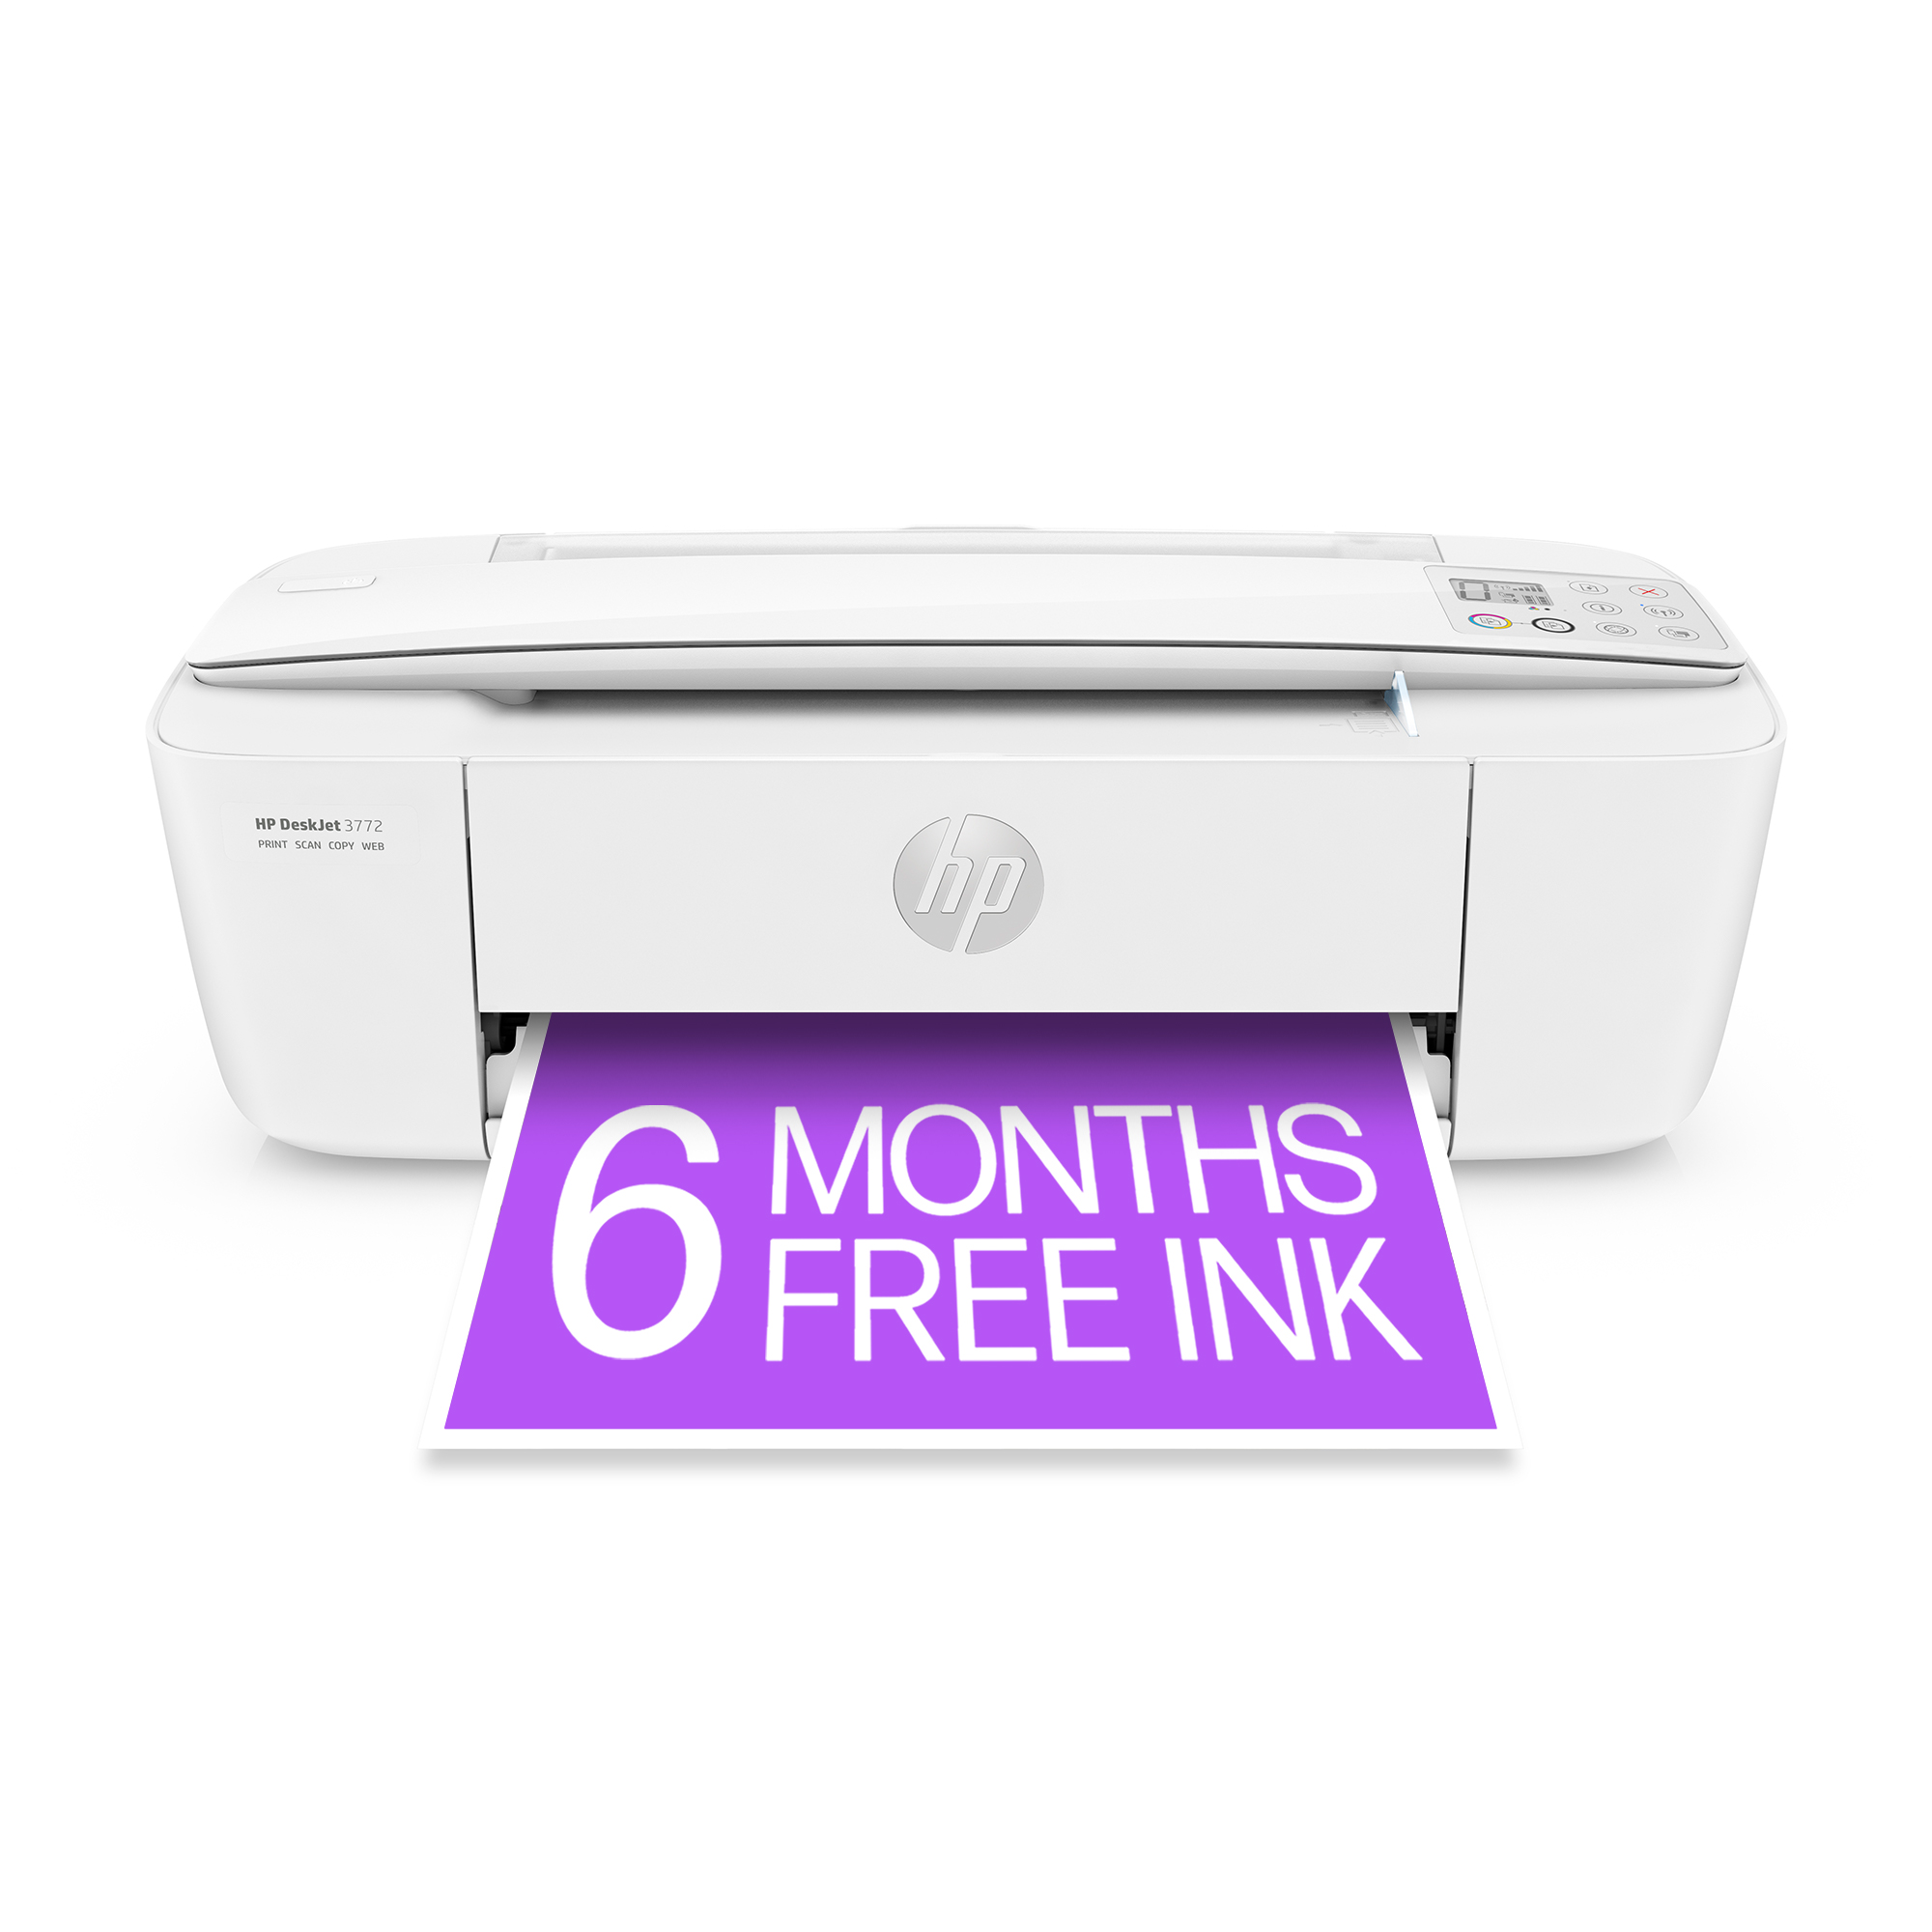 HP DeskJet Plus 4120 Imprimante multifonction (Instant Ink, imprima